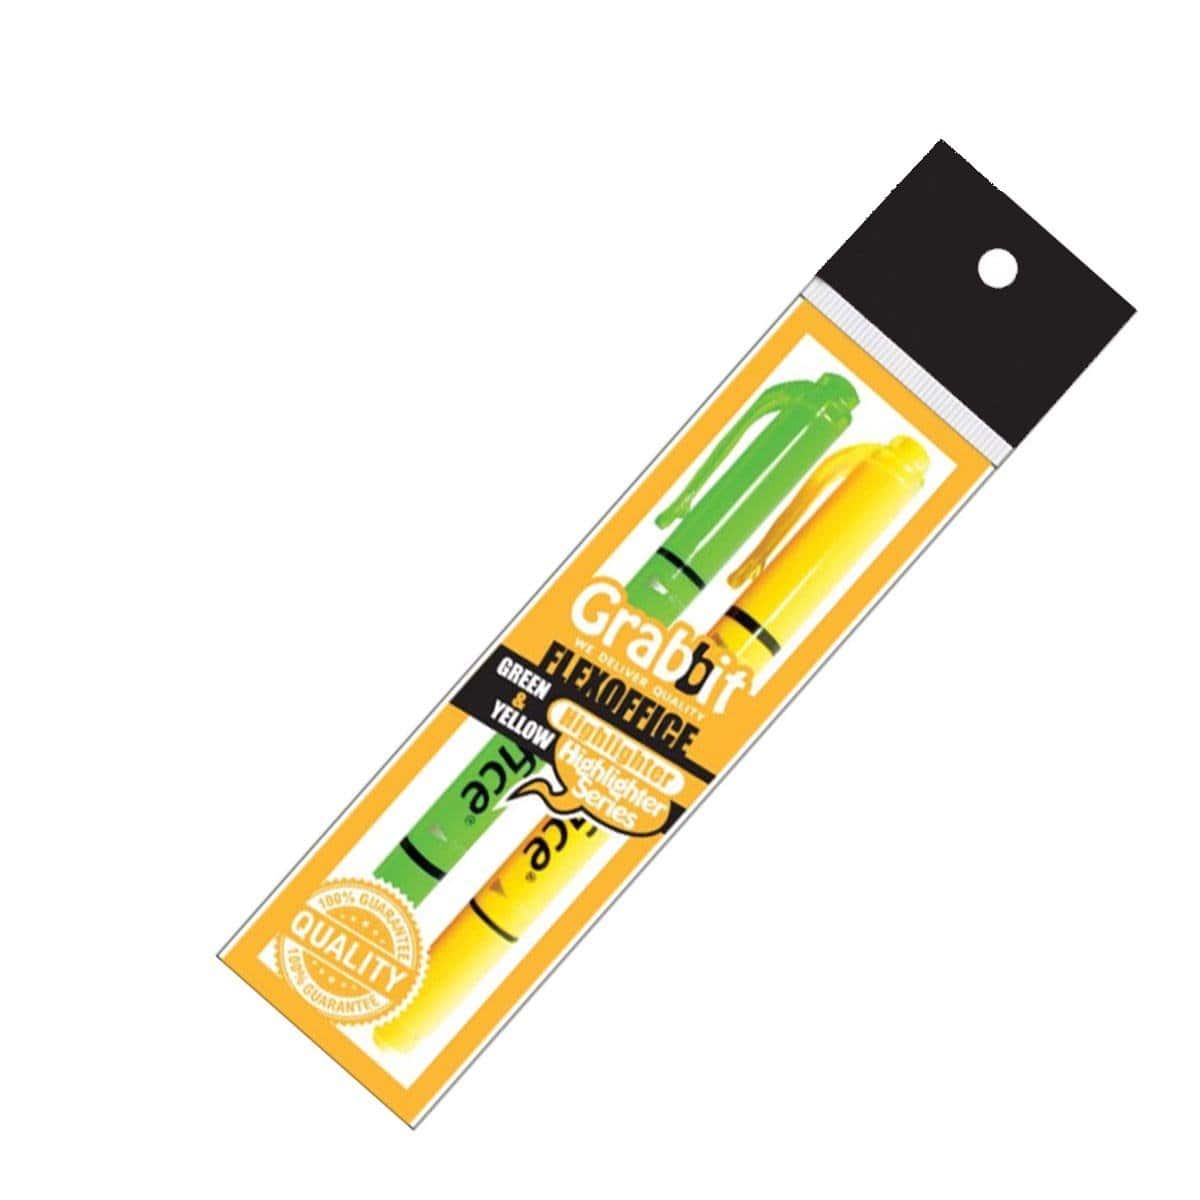 Grabbit Flexoffice Highlighter (Green & Yellow)